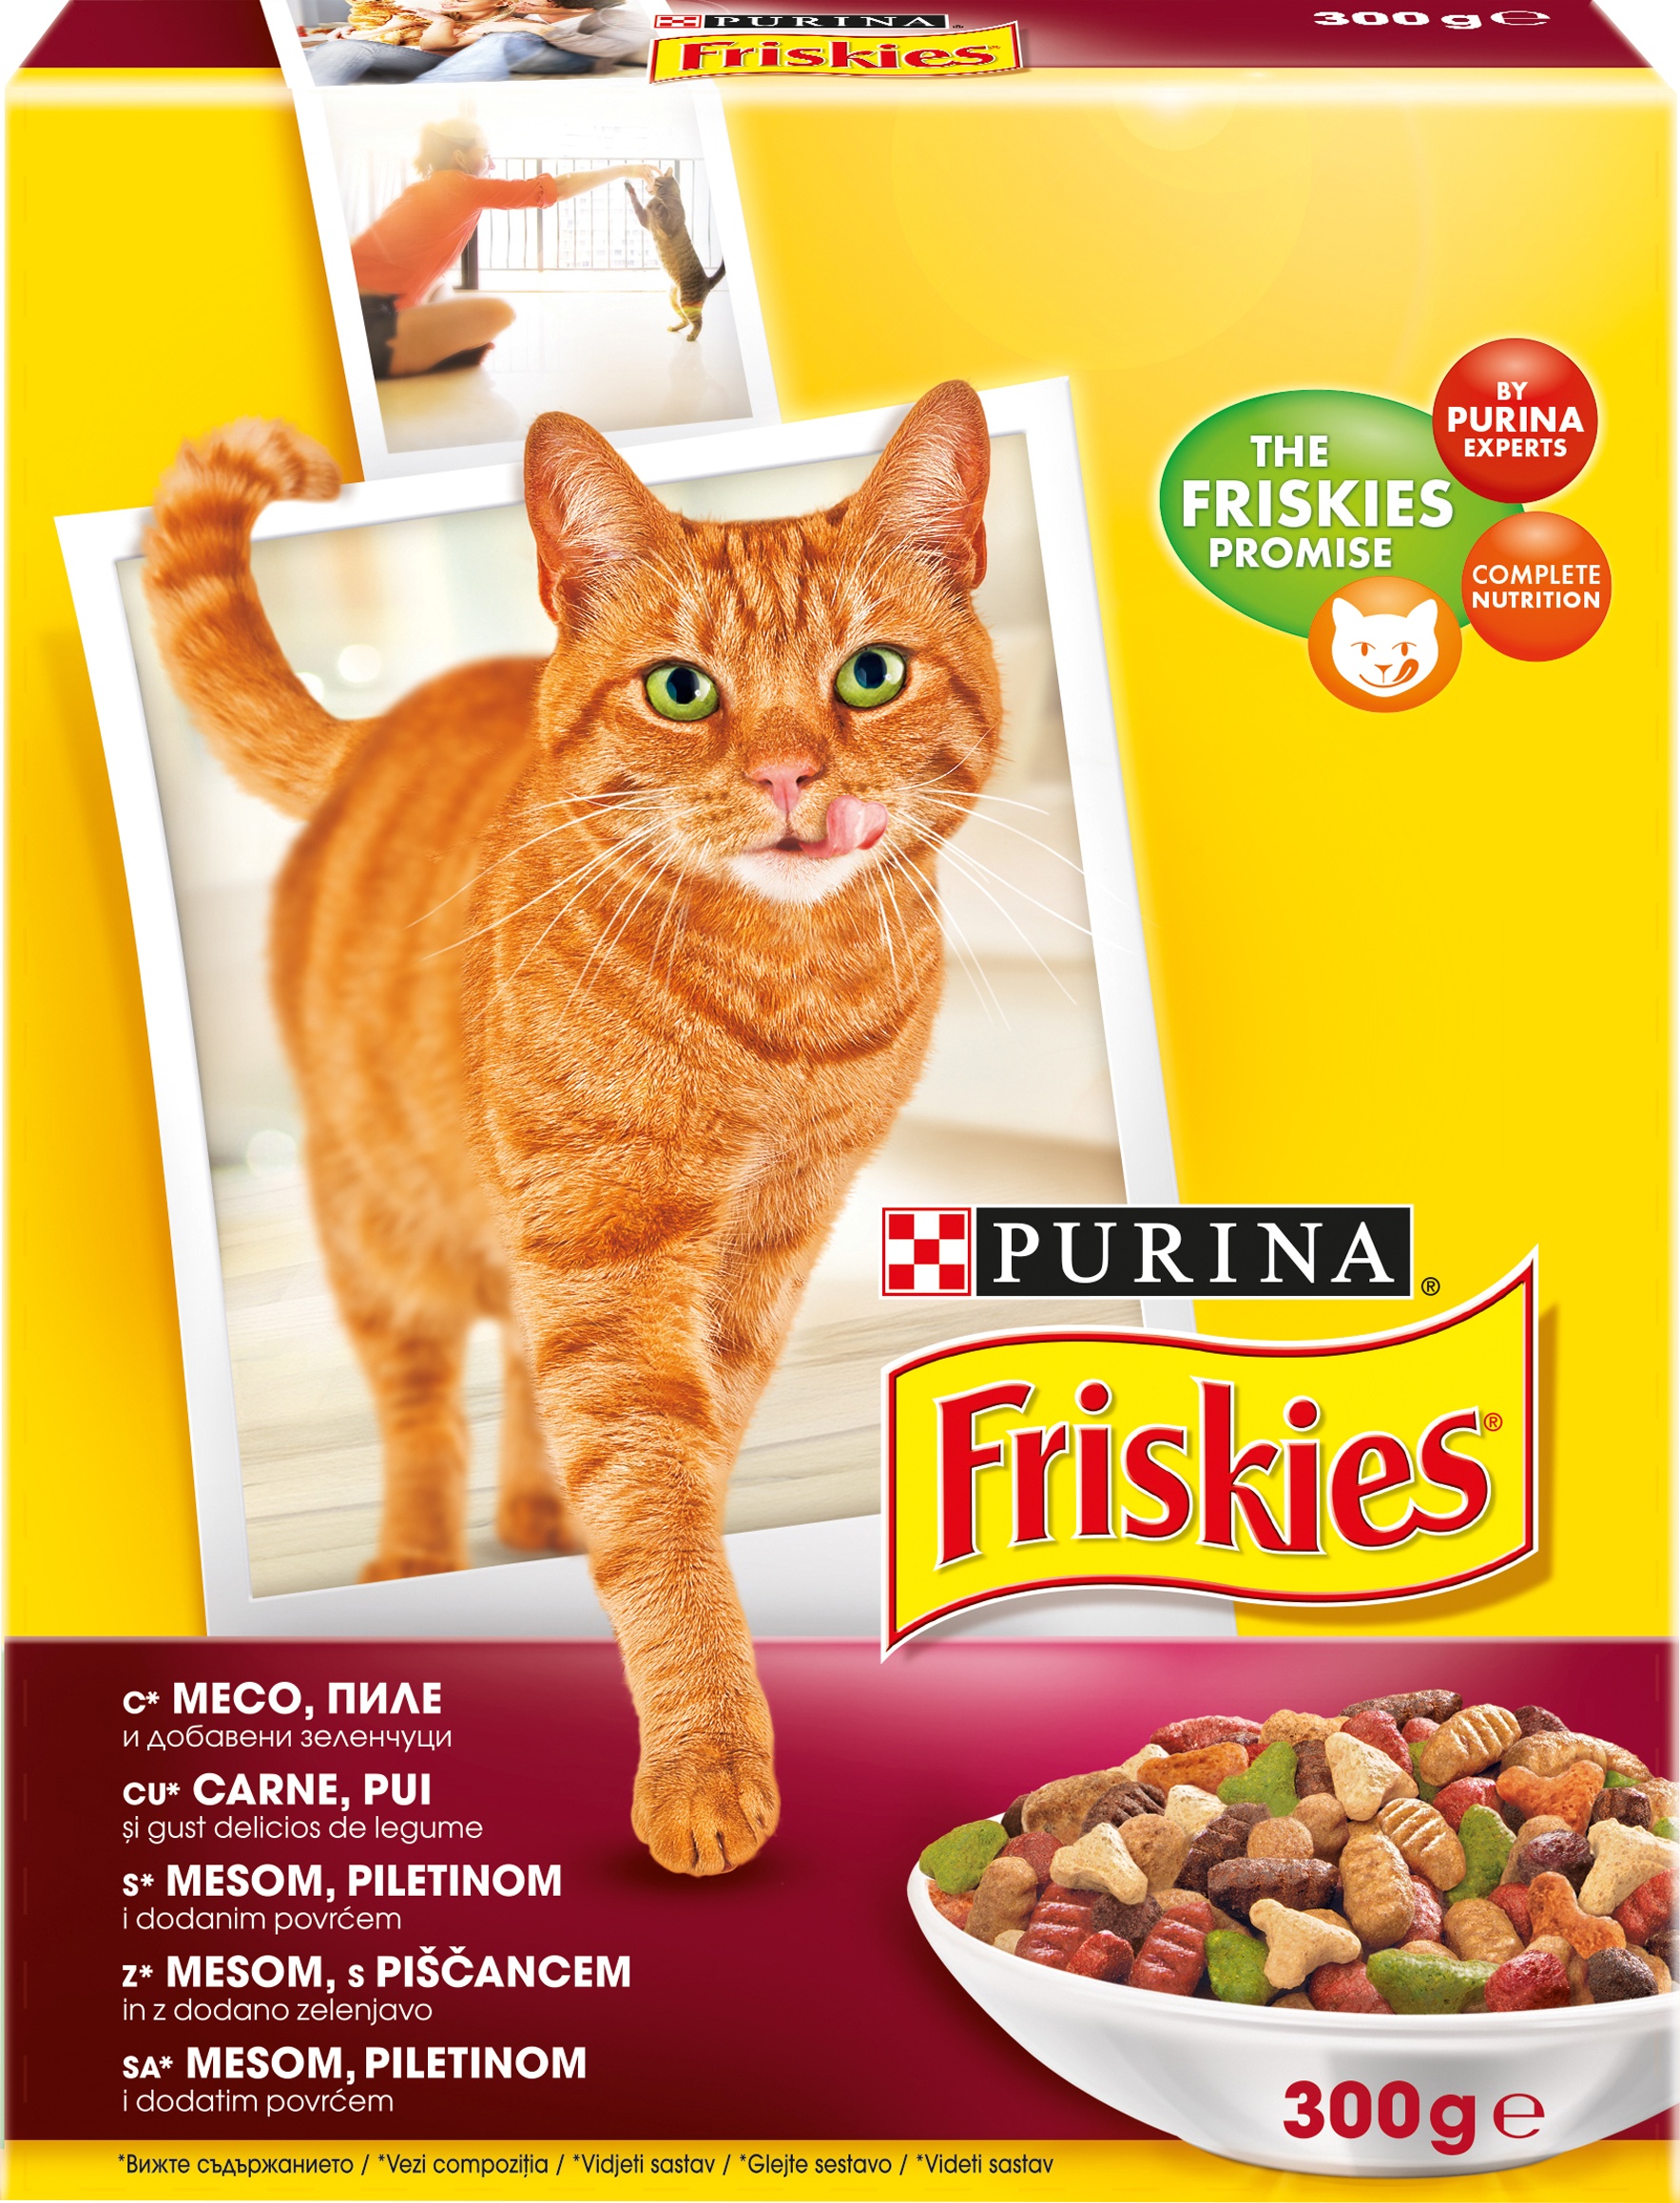 Slika za Hrana za mačke Friskies džigerica povrće 300g